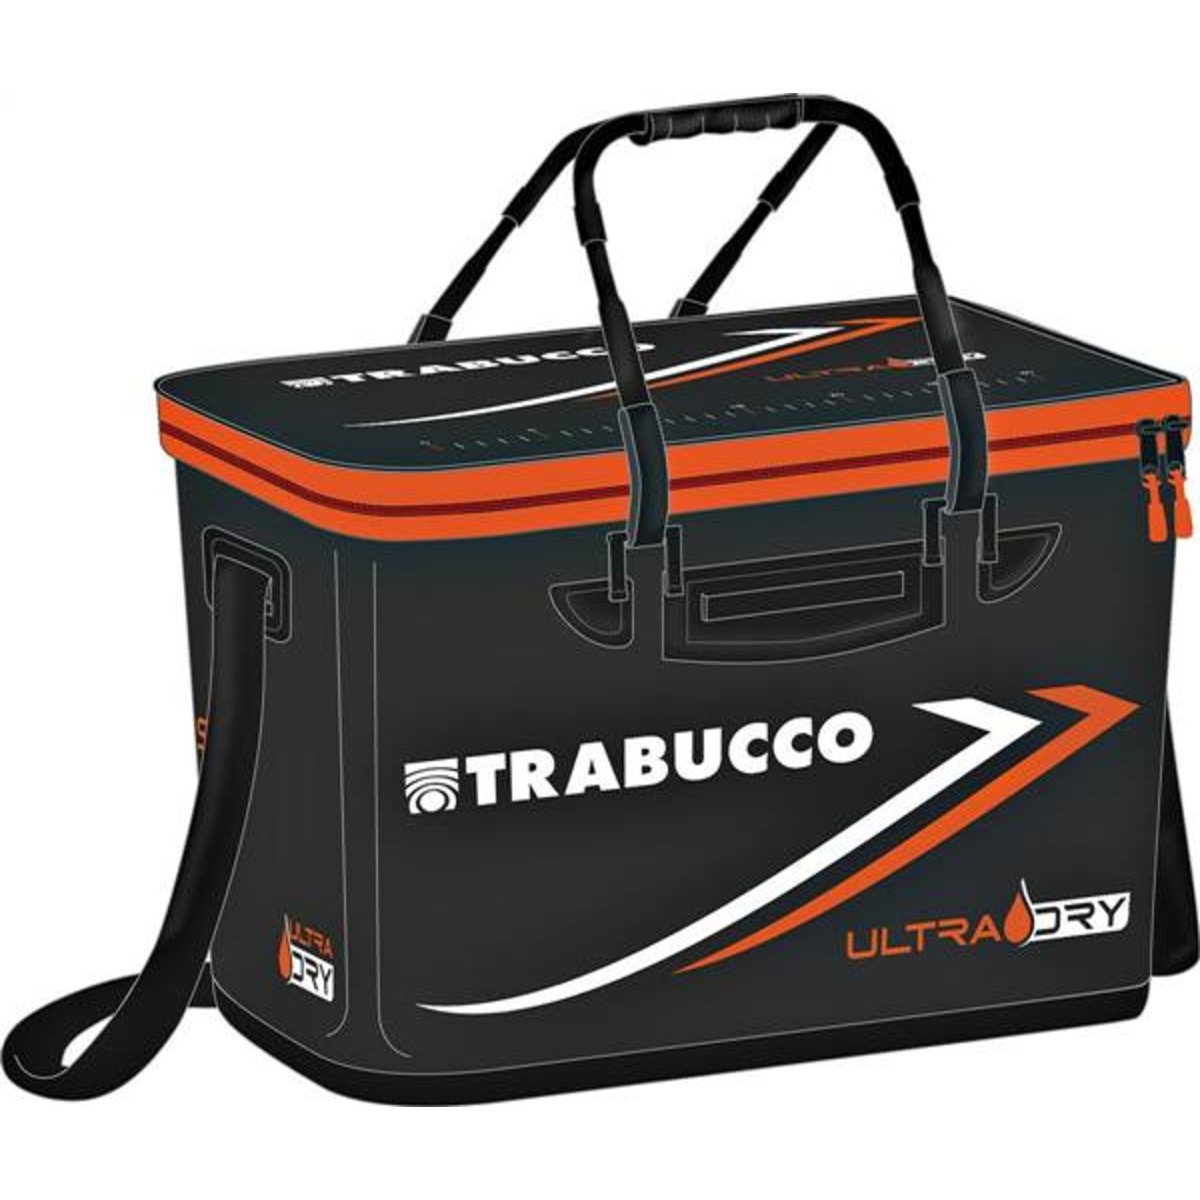 Trabucco Hardcase - 39x25x25 cm